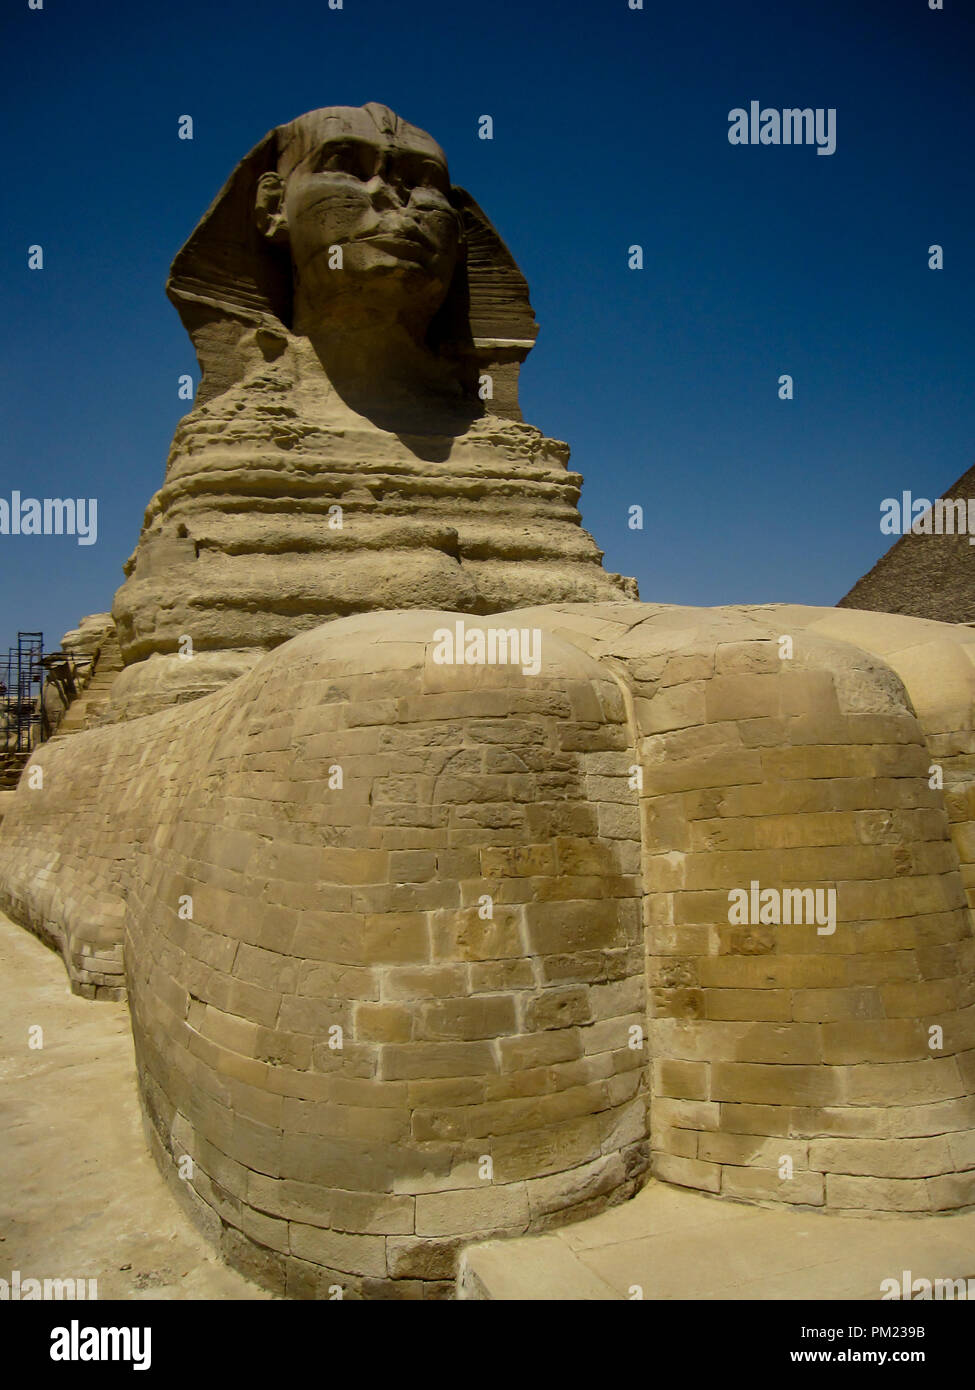 Cierran vistas de la Gran Esfinge de Giza, en Egipto, en un área de acceso restringido. Este es un importante destino turístico importante sitio arqueológico. Foto de stock